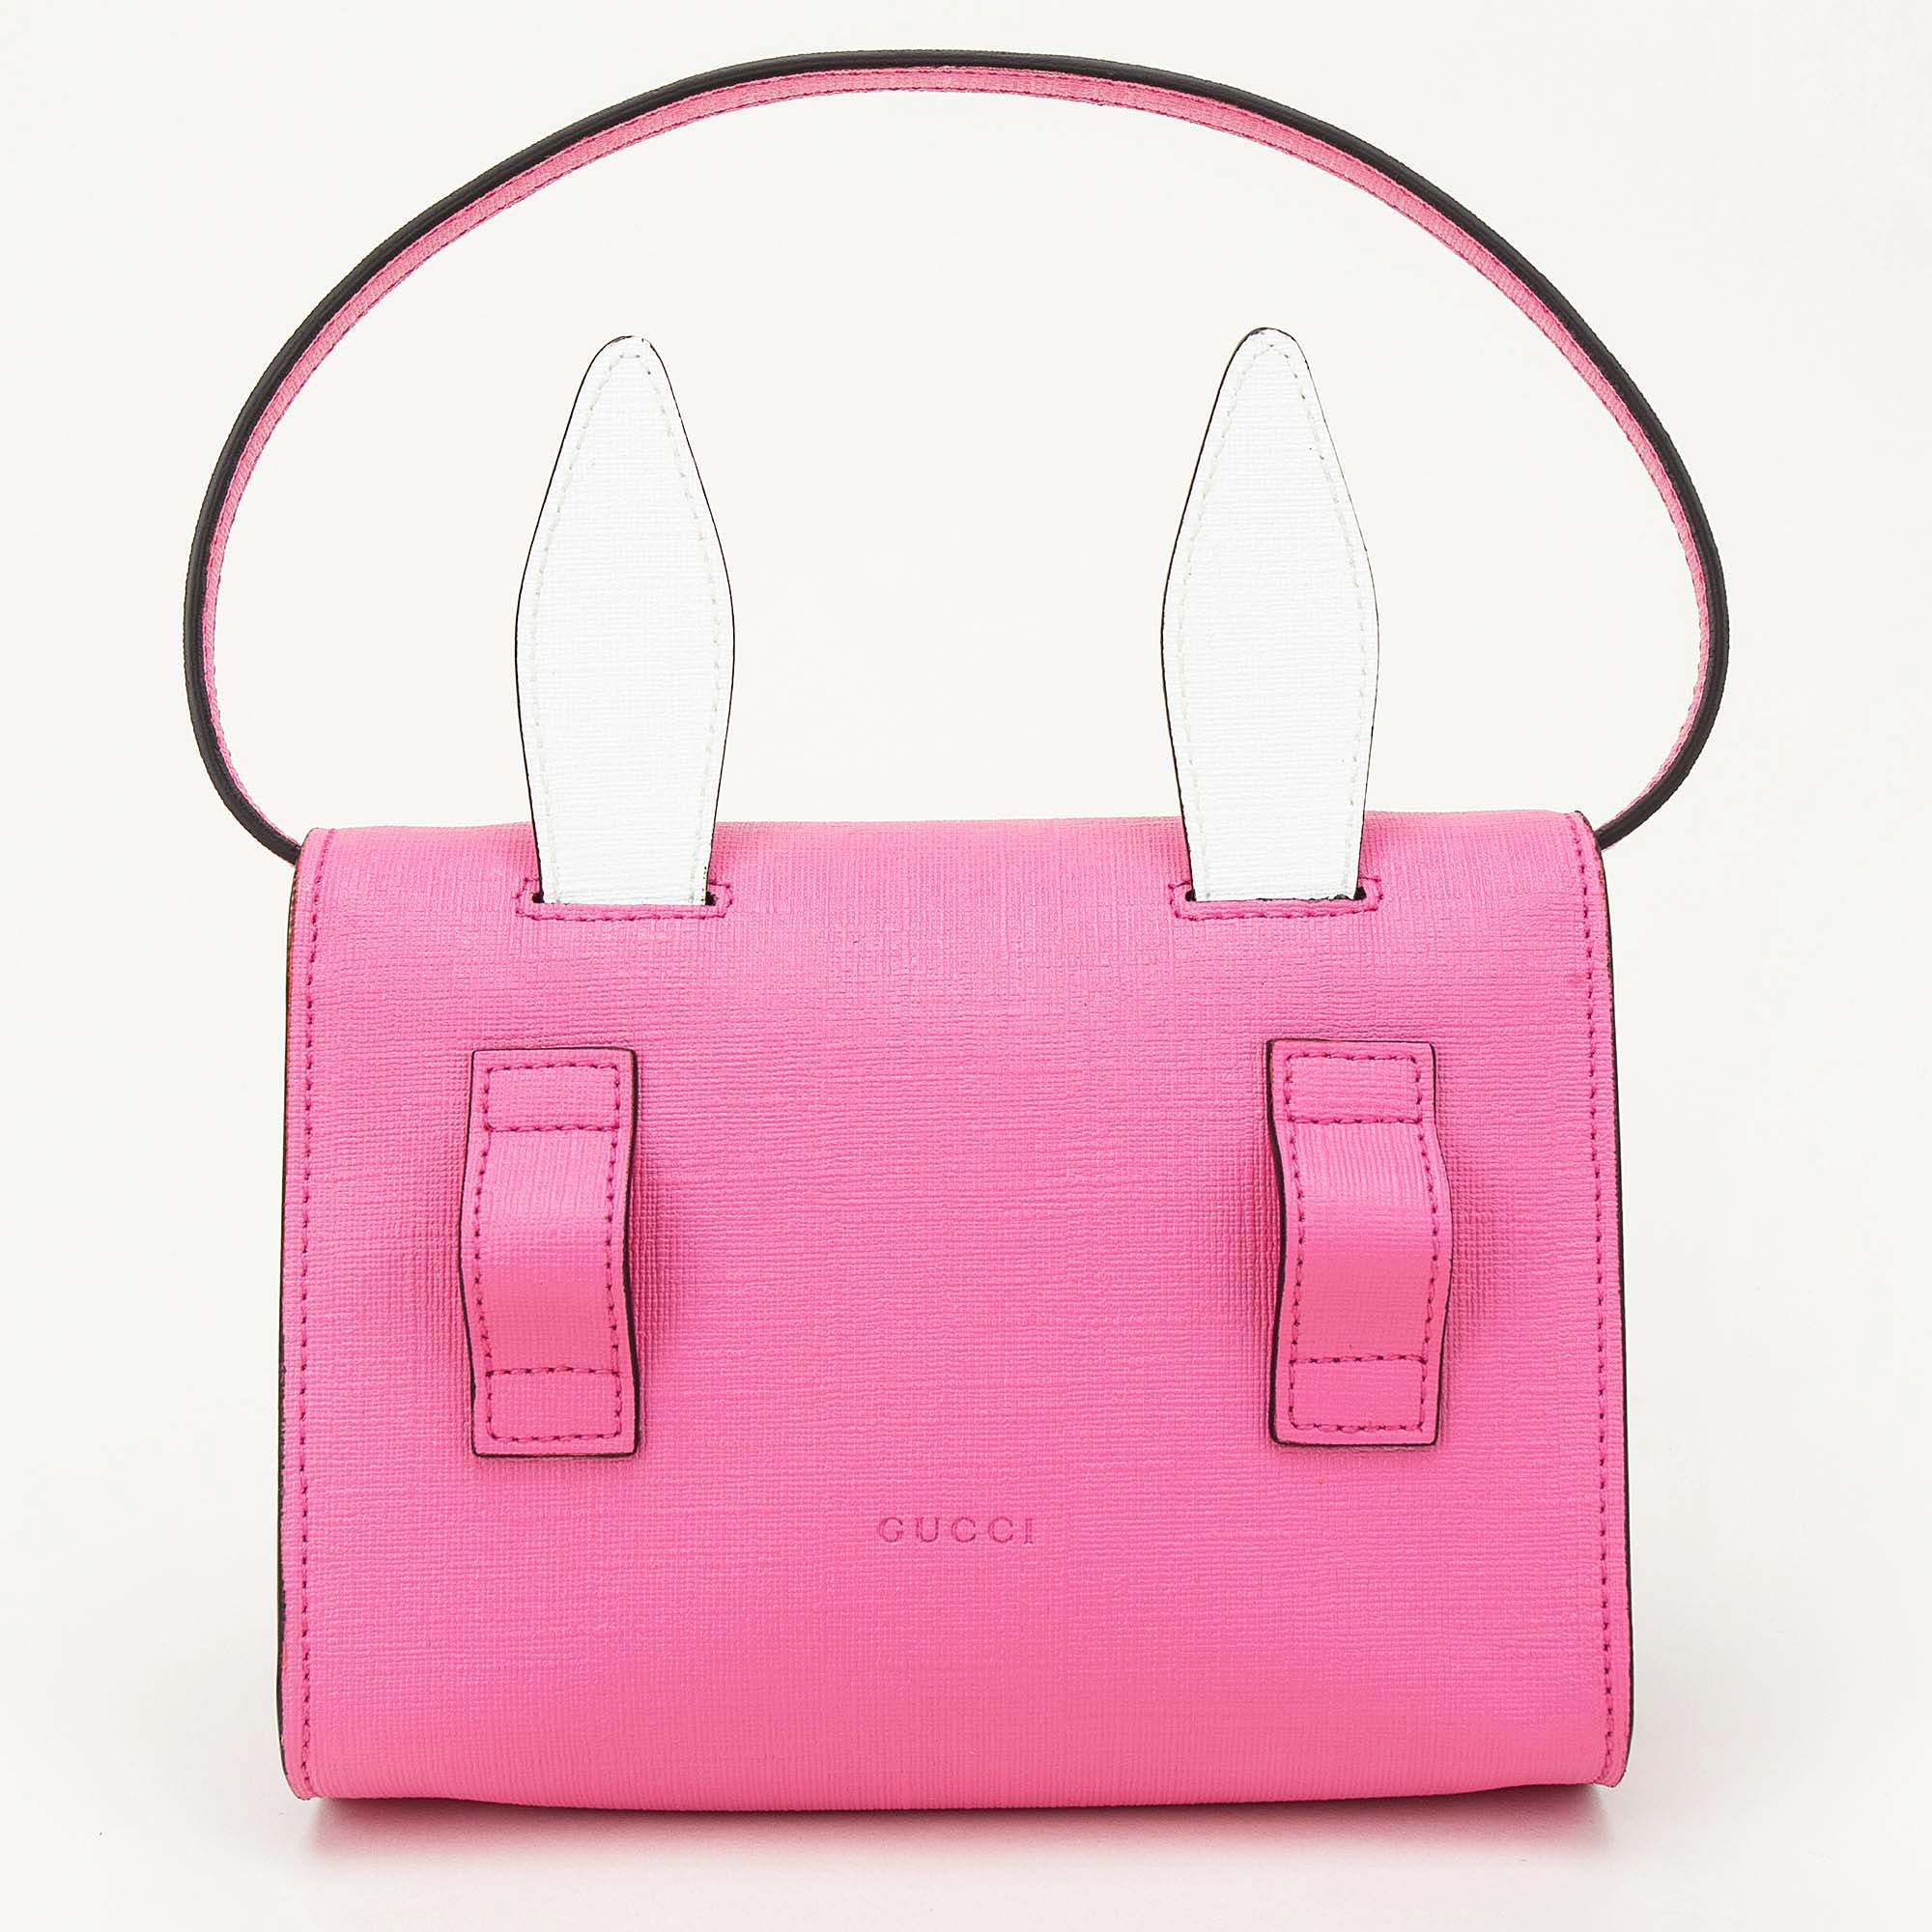 Girls Pink Bunny Bag